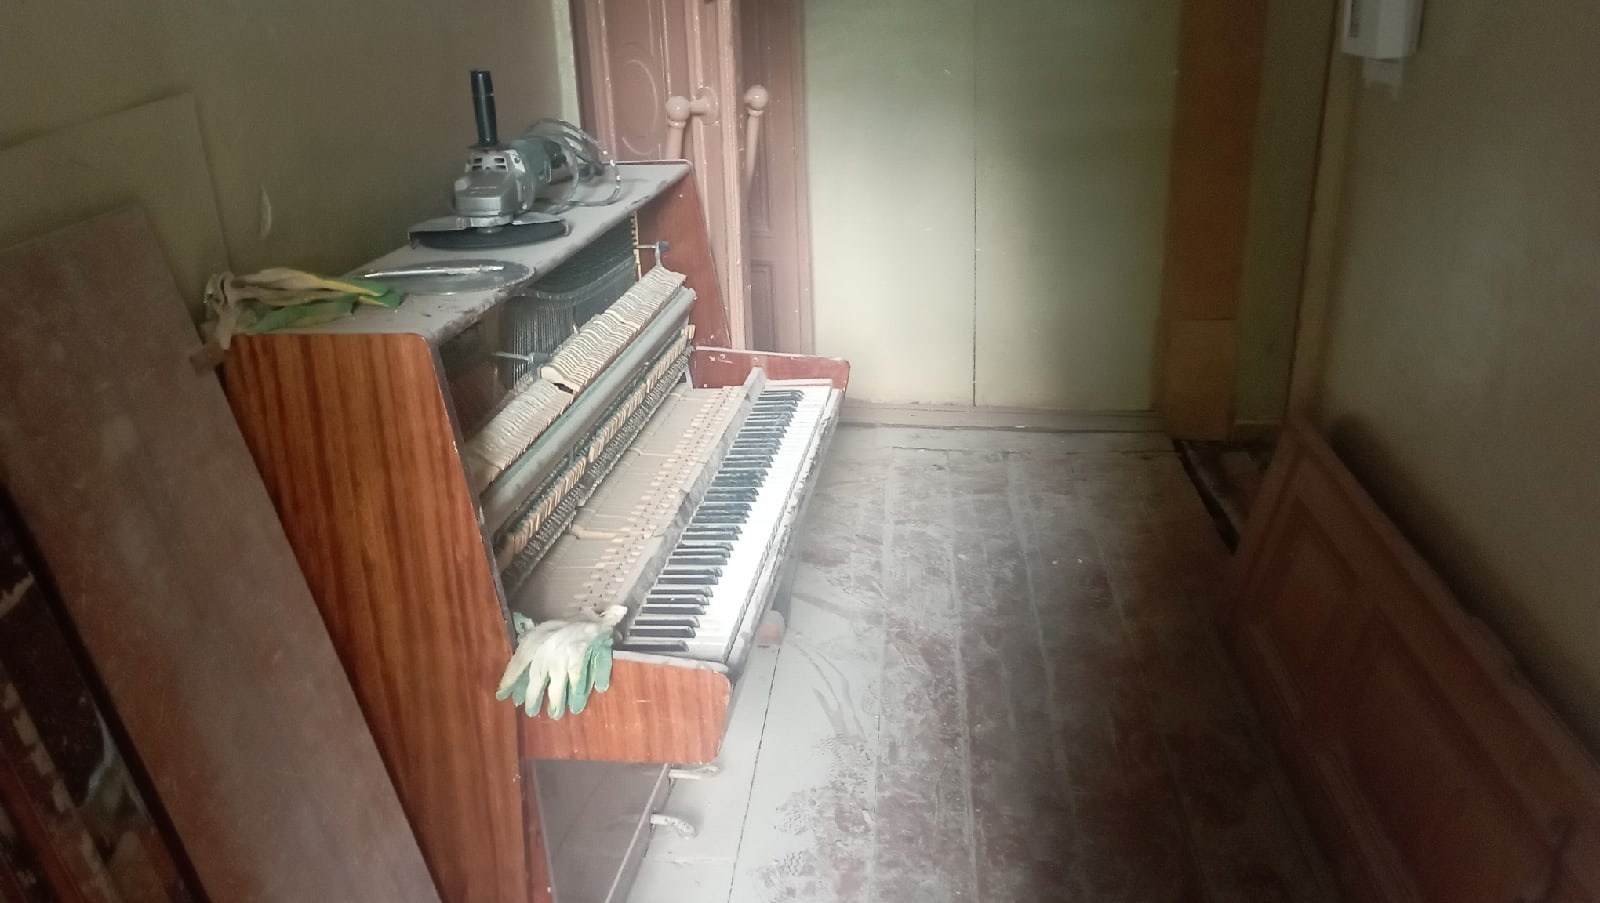 Стал подставкой для болгарки. Пианино заметили под слоем пыли в Доме архитектора в Локте